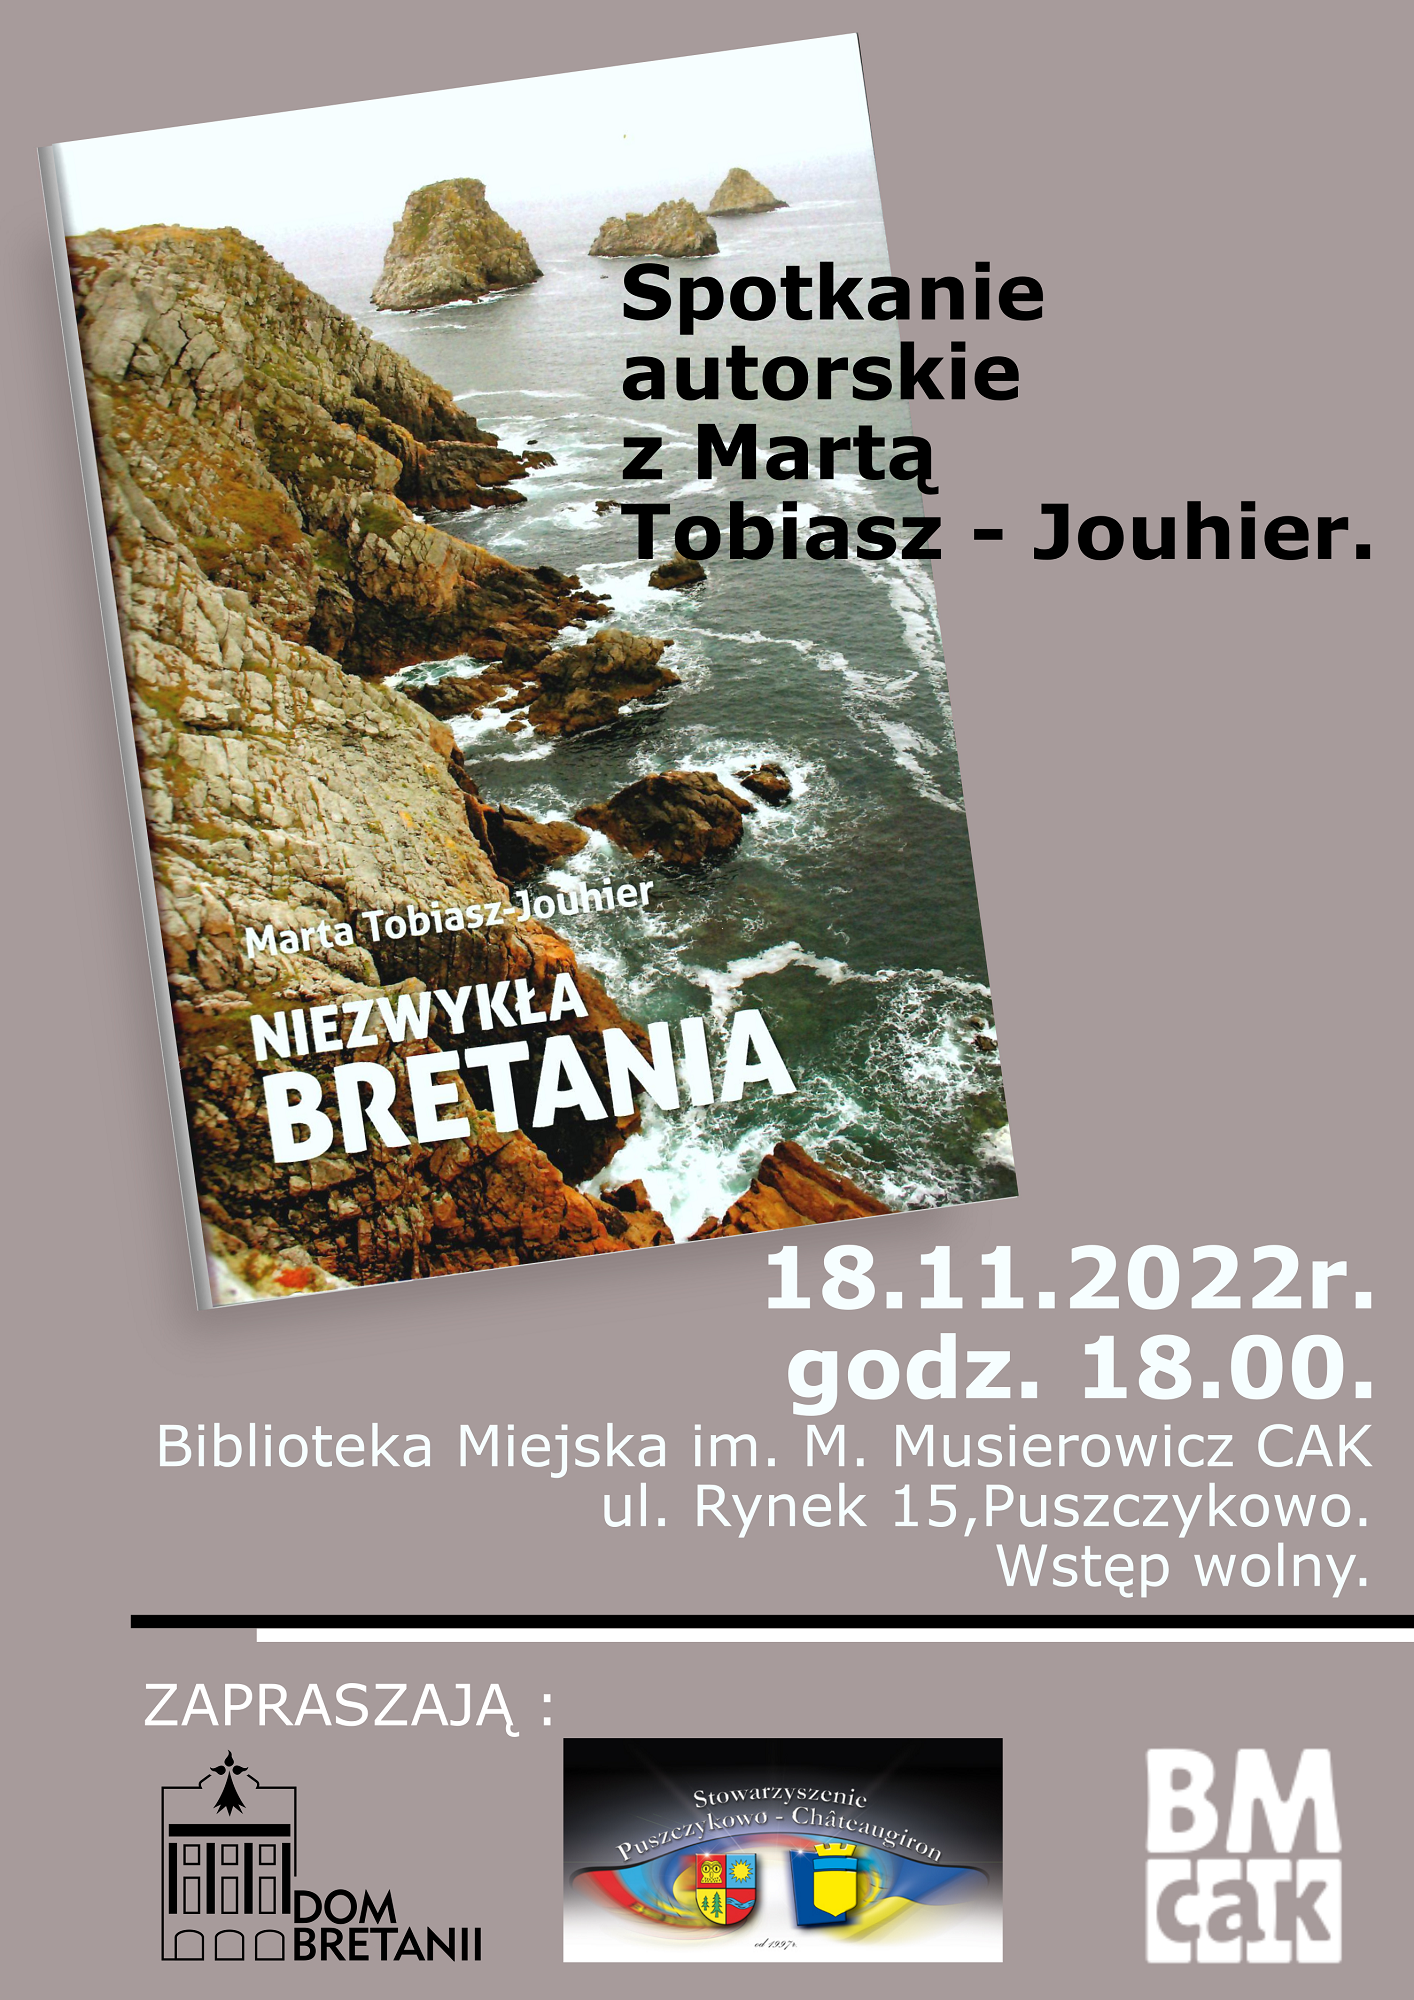 Biblioteka Miejska w Puszczykowie zaprasza na spotkanie autorskie z Martą Tobiasz-Jouhier.